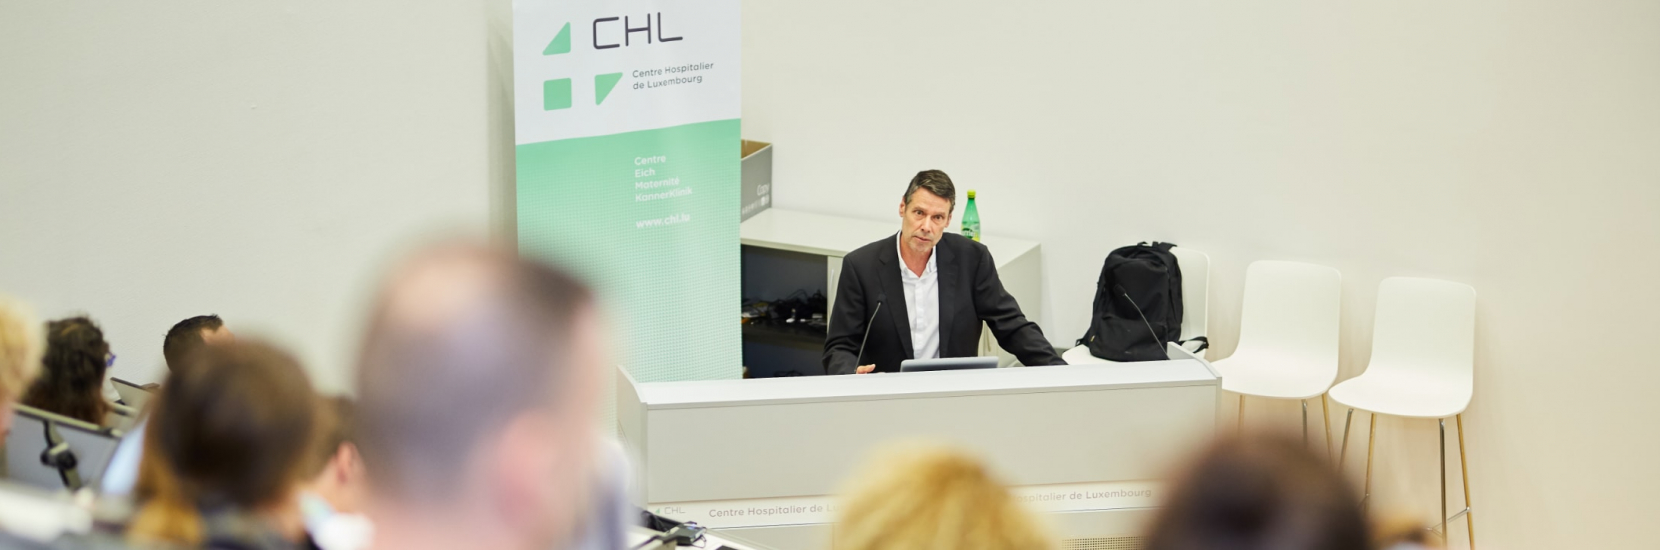 Lundi 23 septembre 2019, le CHL a lancé sa semaine de la sécurité hospitalière avec un cycle de conférences dédiées.